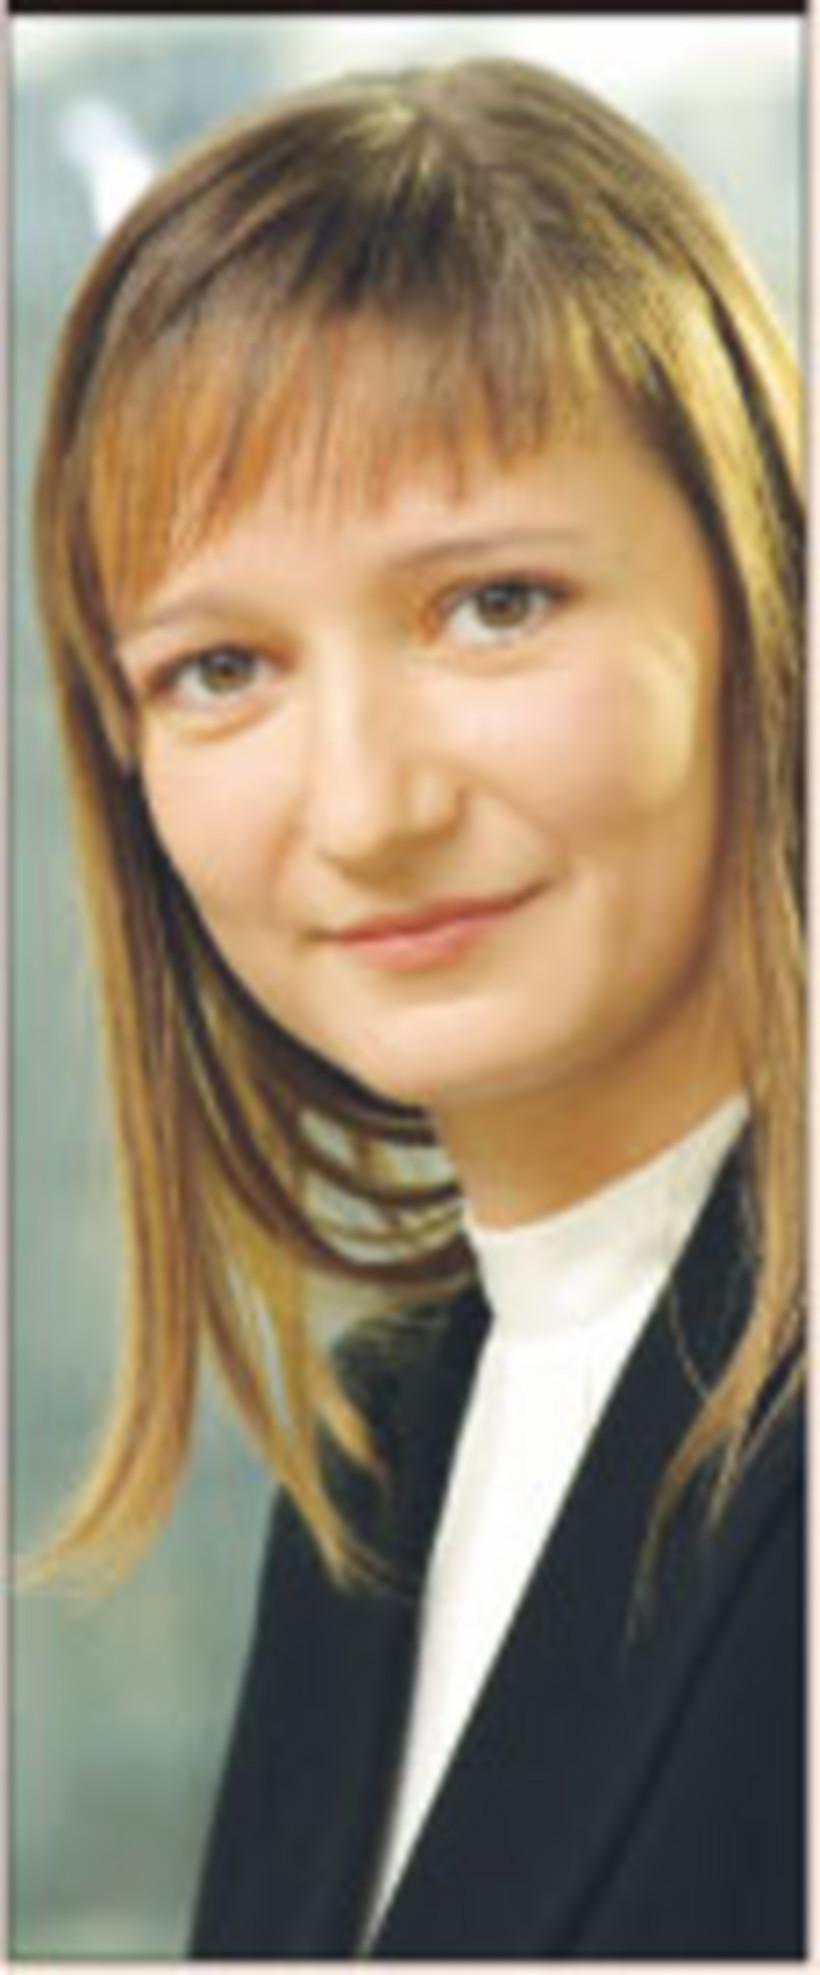 Iwona Waglowska, prawnik w kancelarii Gide Loyrette Nouel